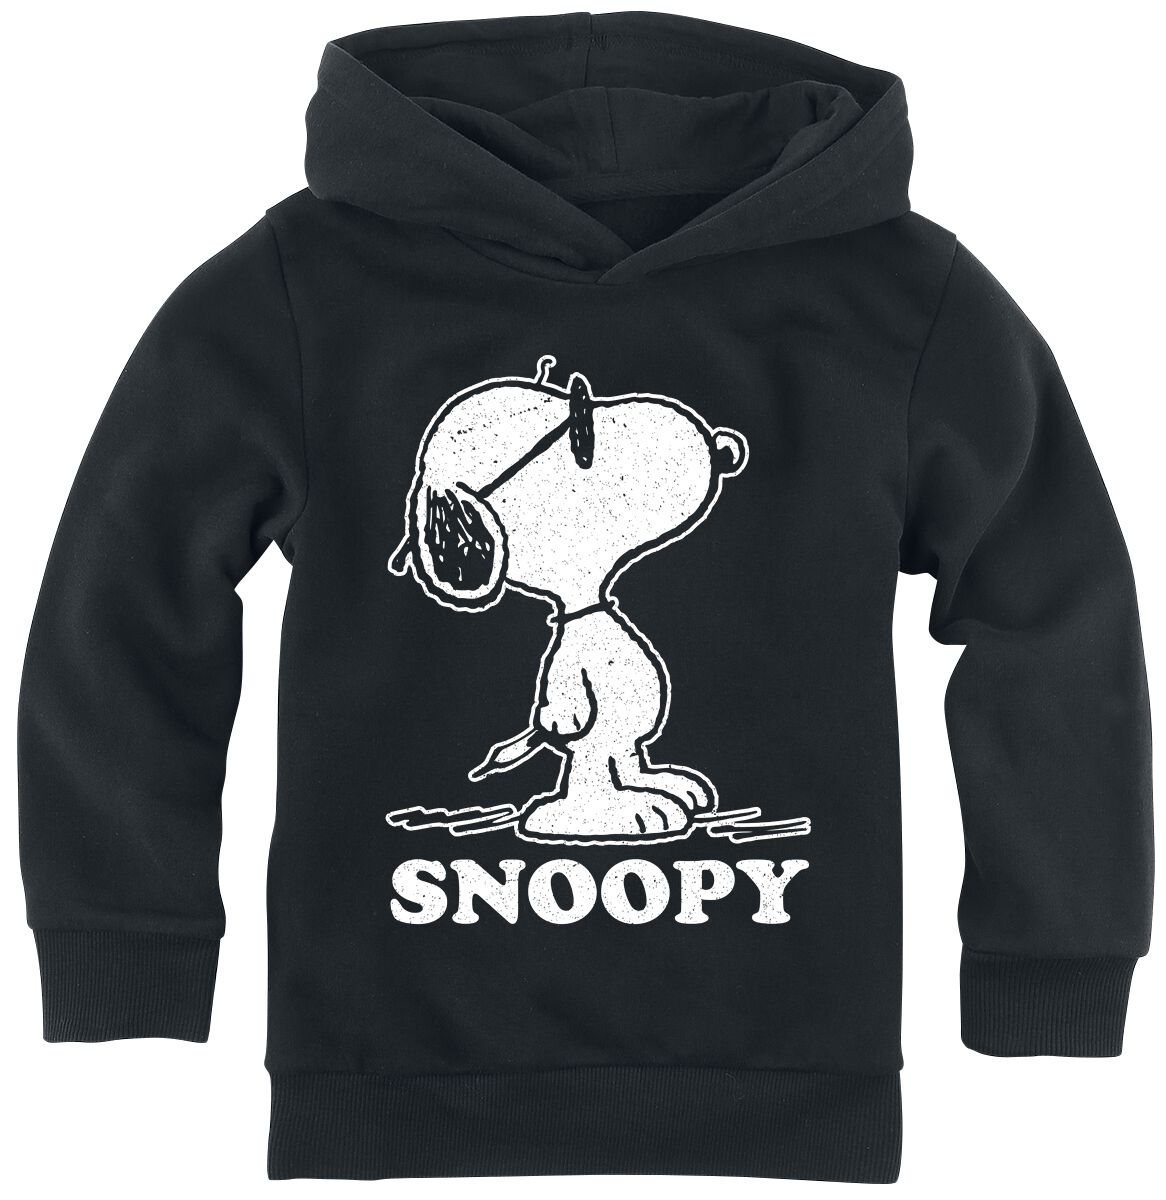 Peanuts Kids - Snoopy Hoodie Sweater black